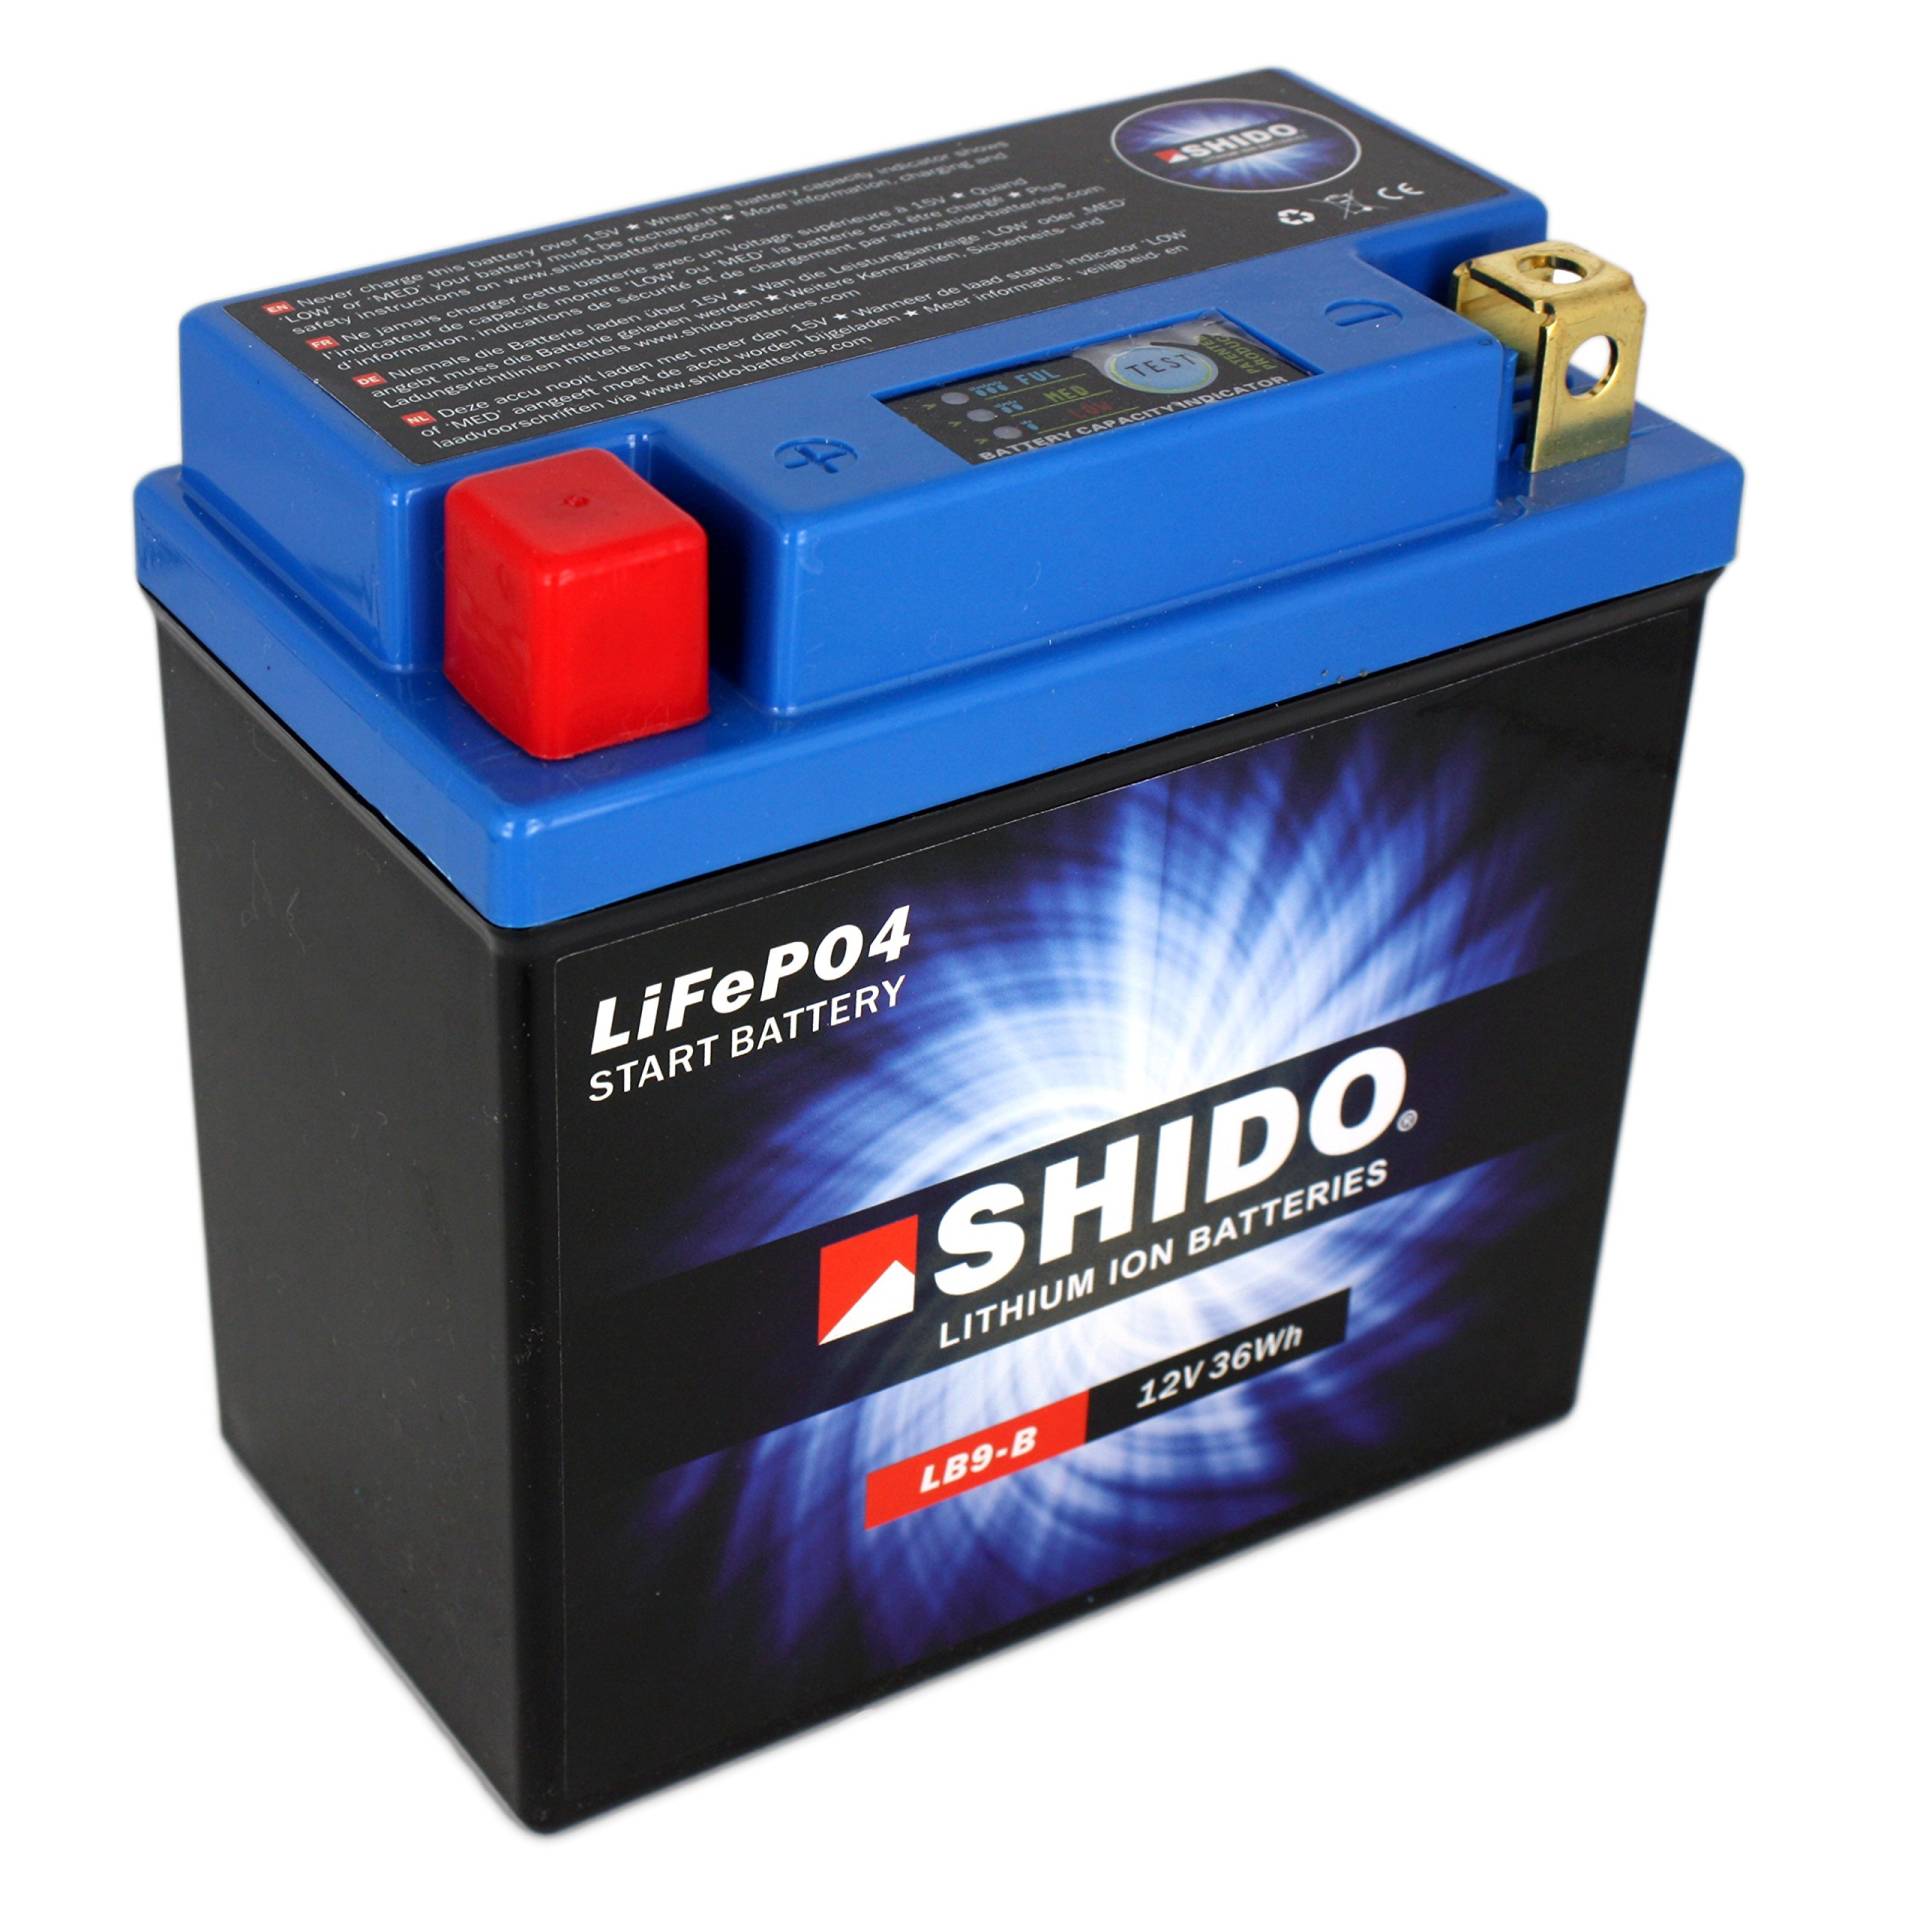 Batterie Shido Lithium LB9-B / YB9-B Quattro, 12V/9AH (Maße: 134x75x134) für Piaggio / Vespa S50 2-Takt Baujahr 2007 von SHIDO